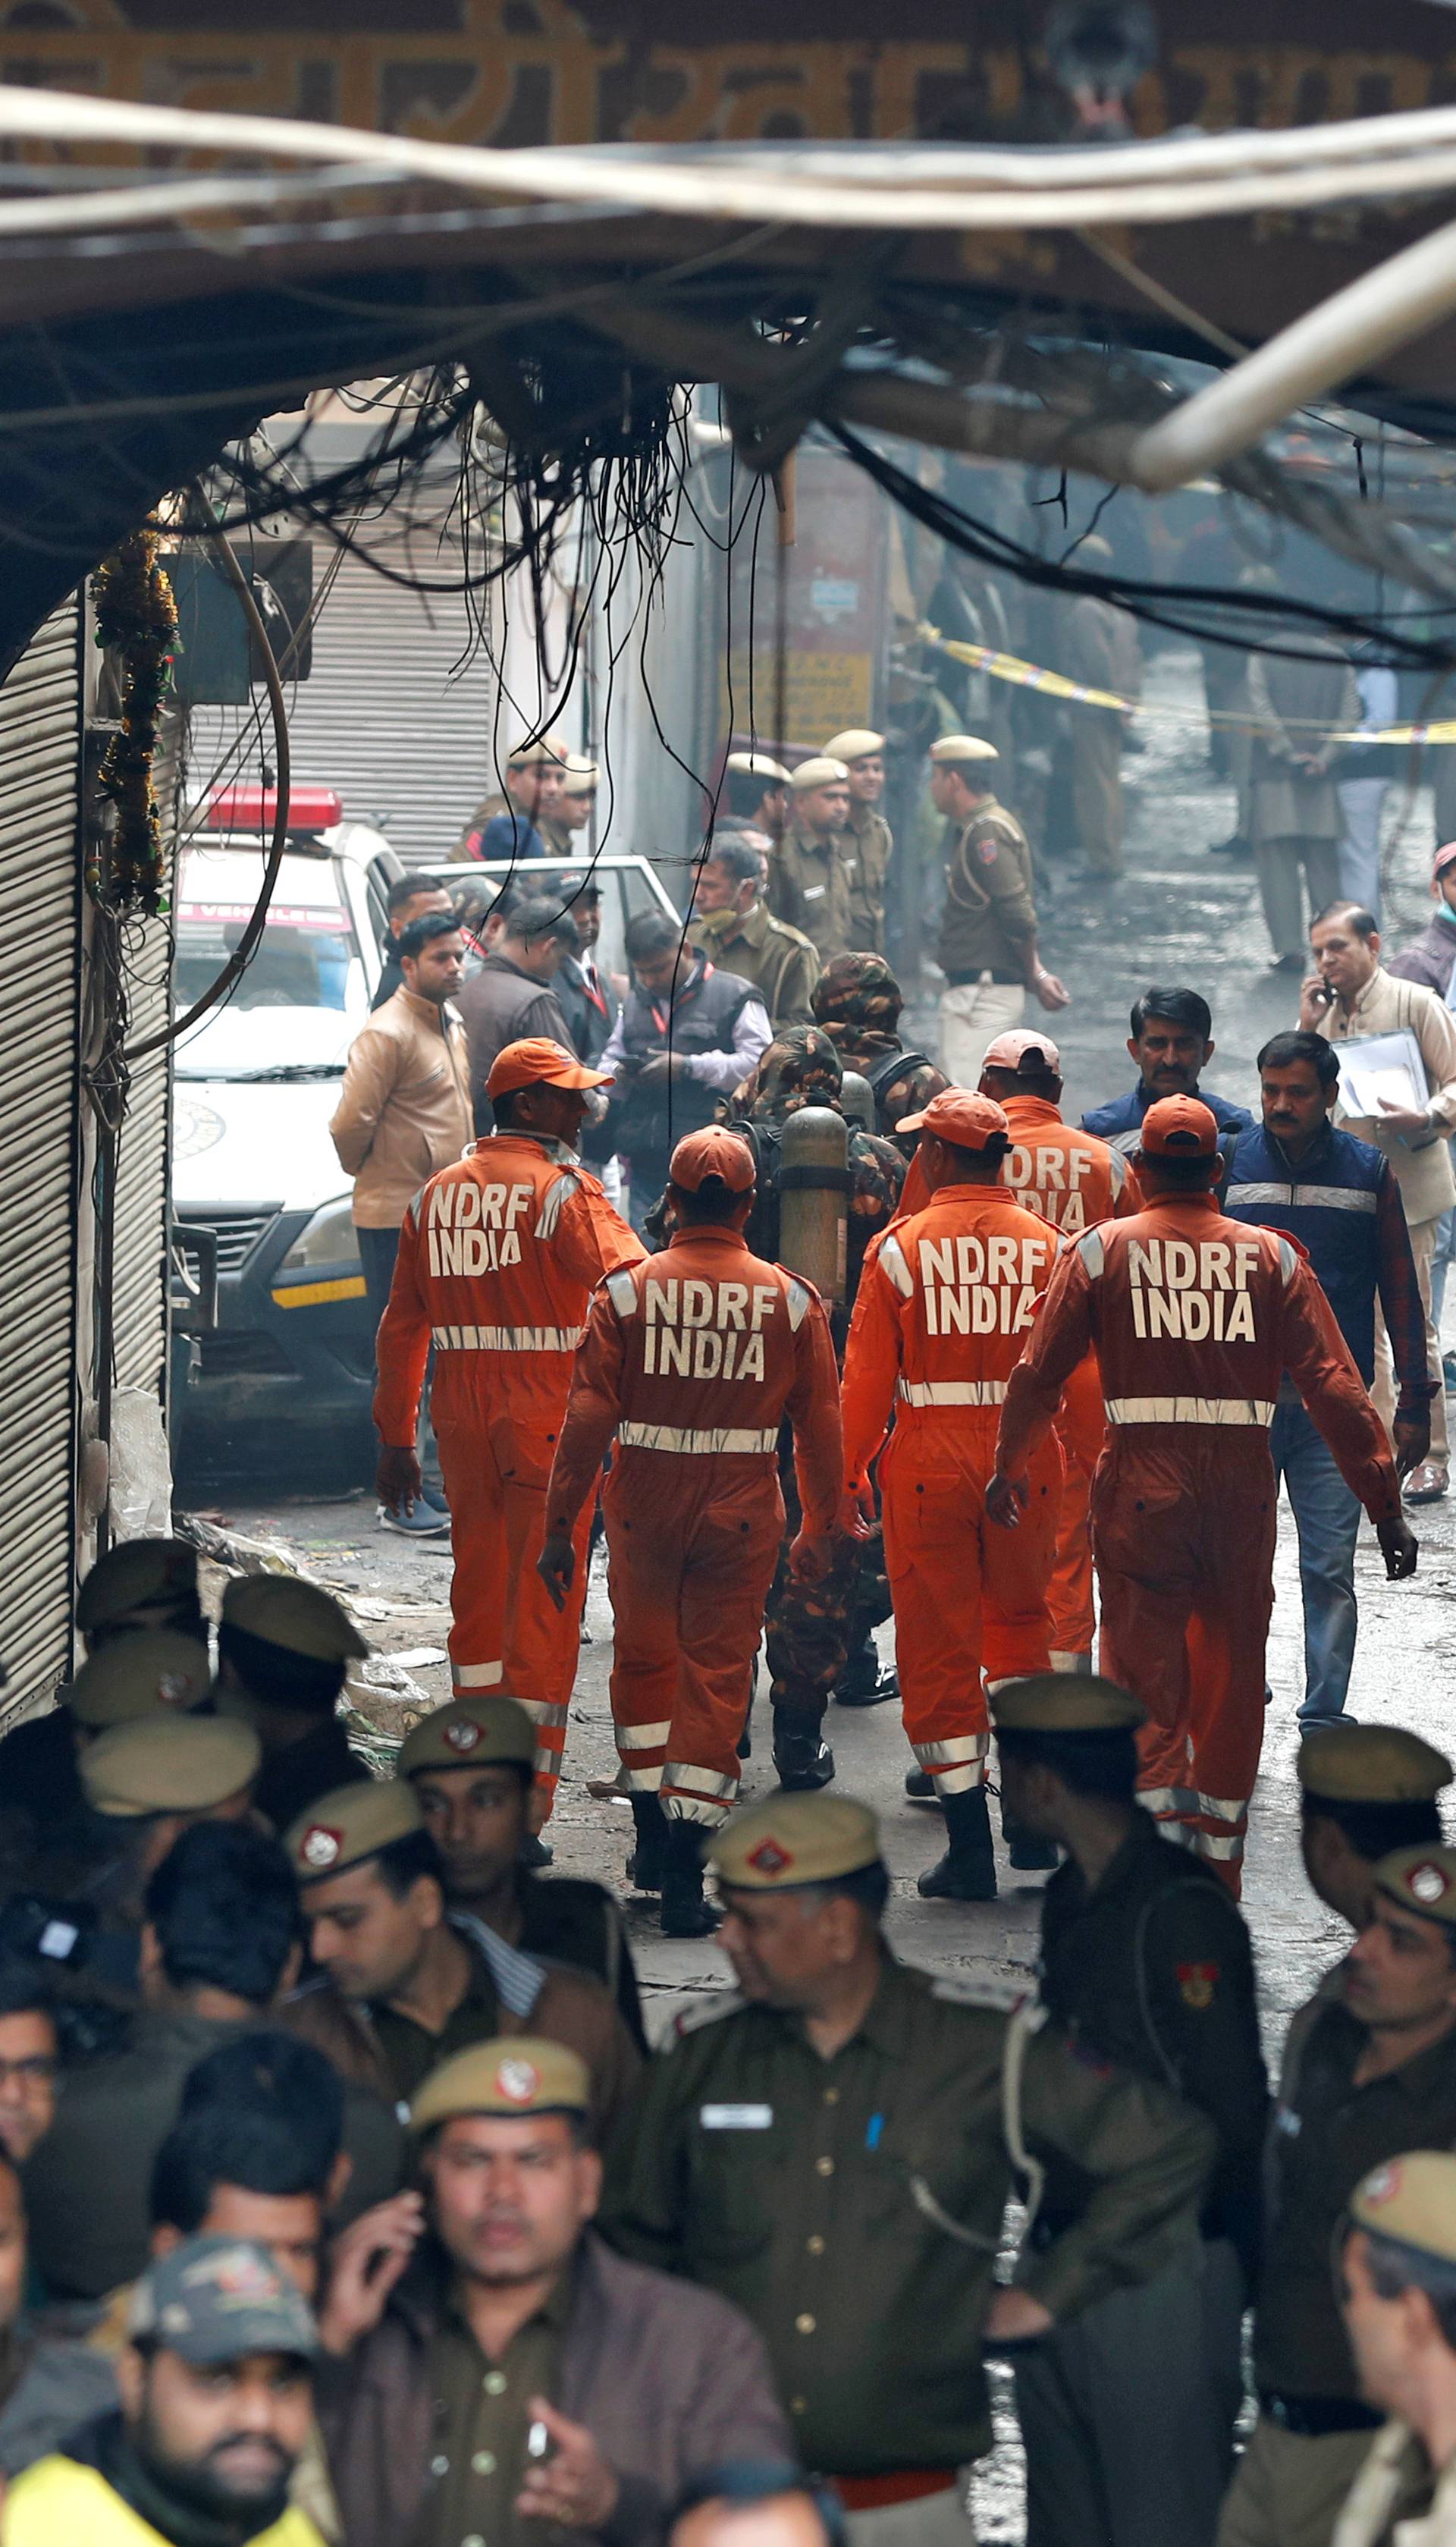 Strava u Indiji: Živi izgorjeli u tvornici, najmanje 43 mrtvih...